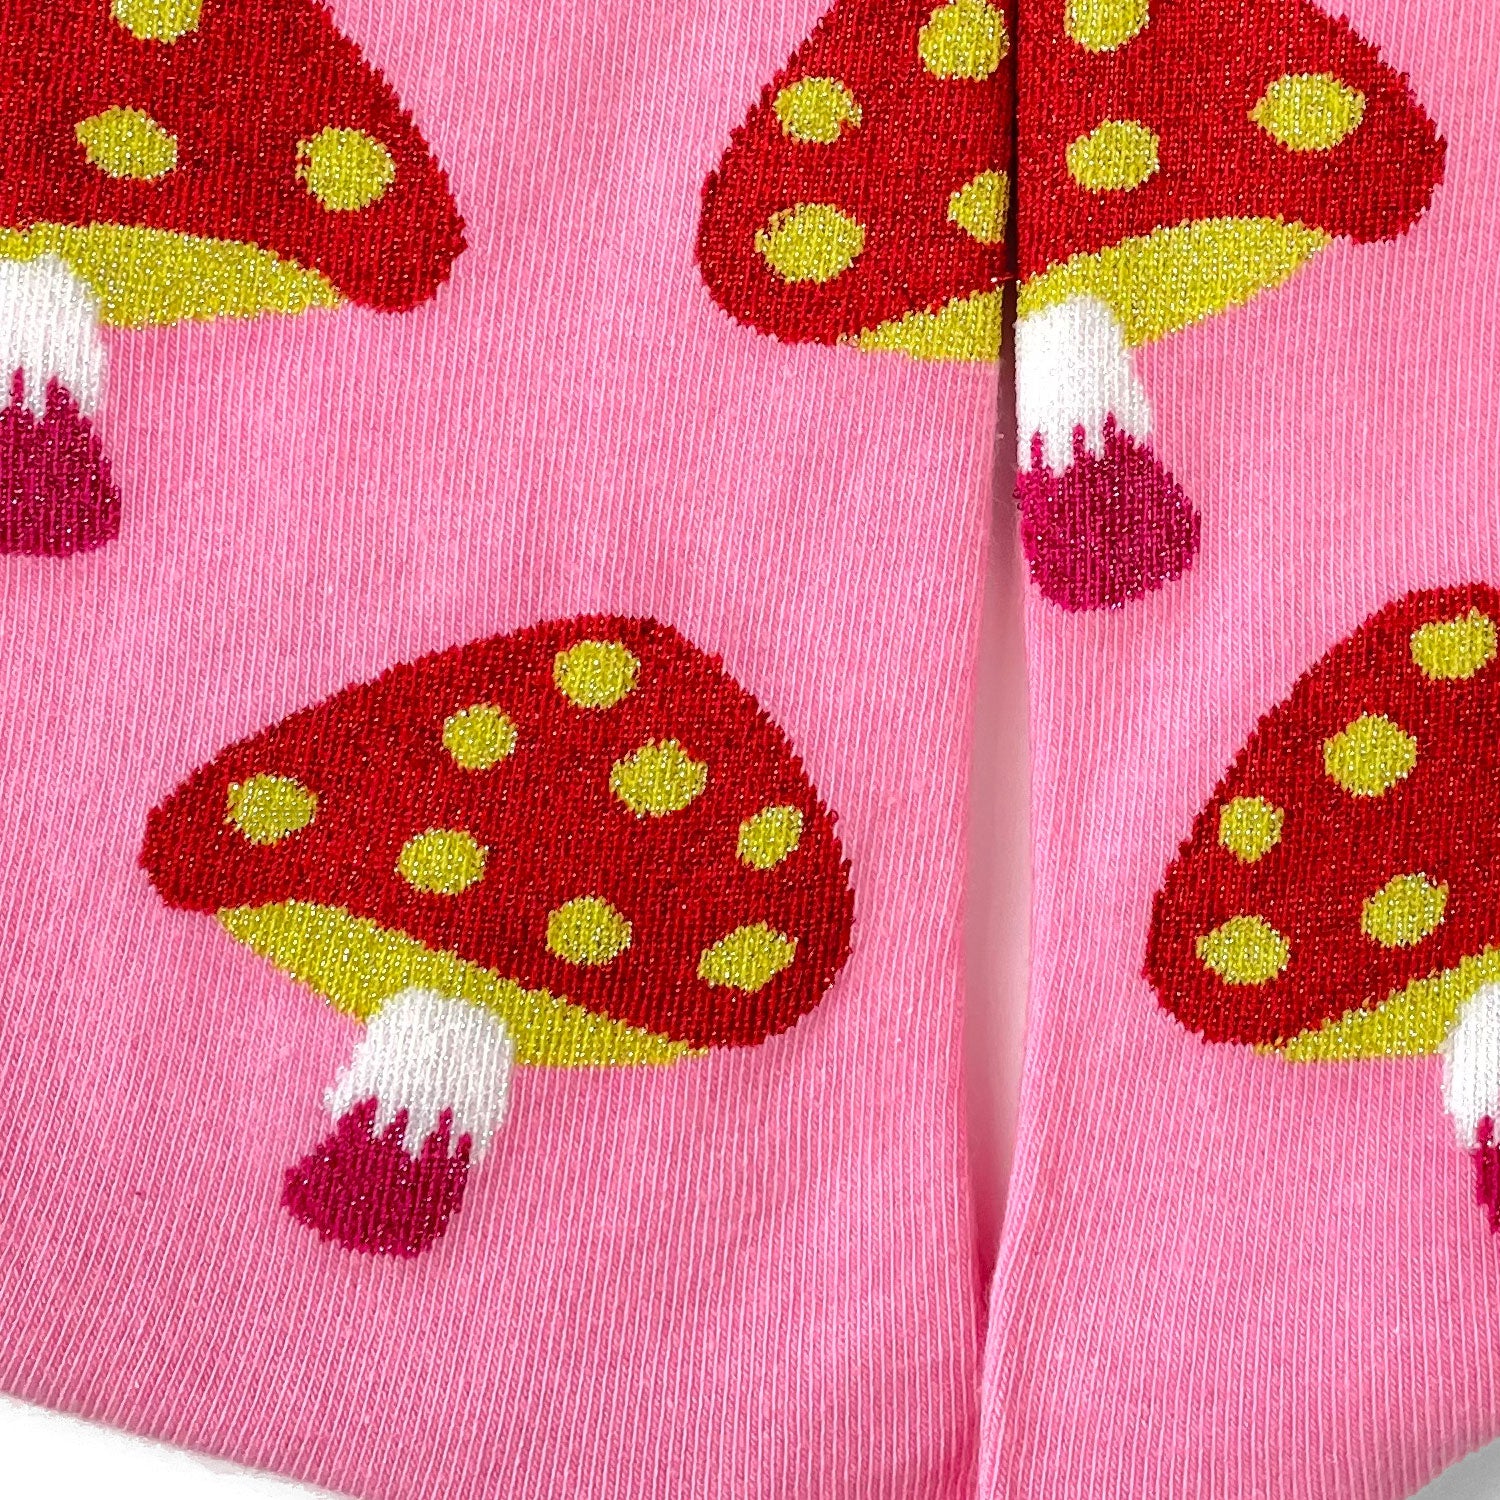 Red mushrooms on pink socks.